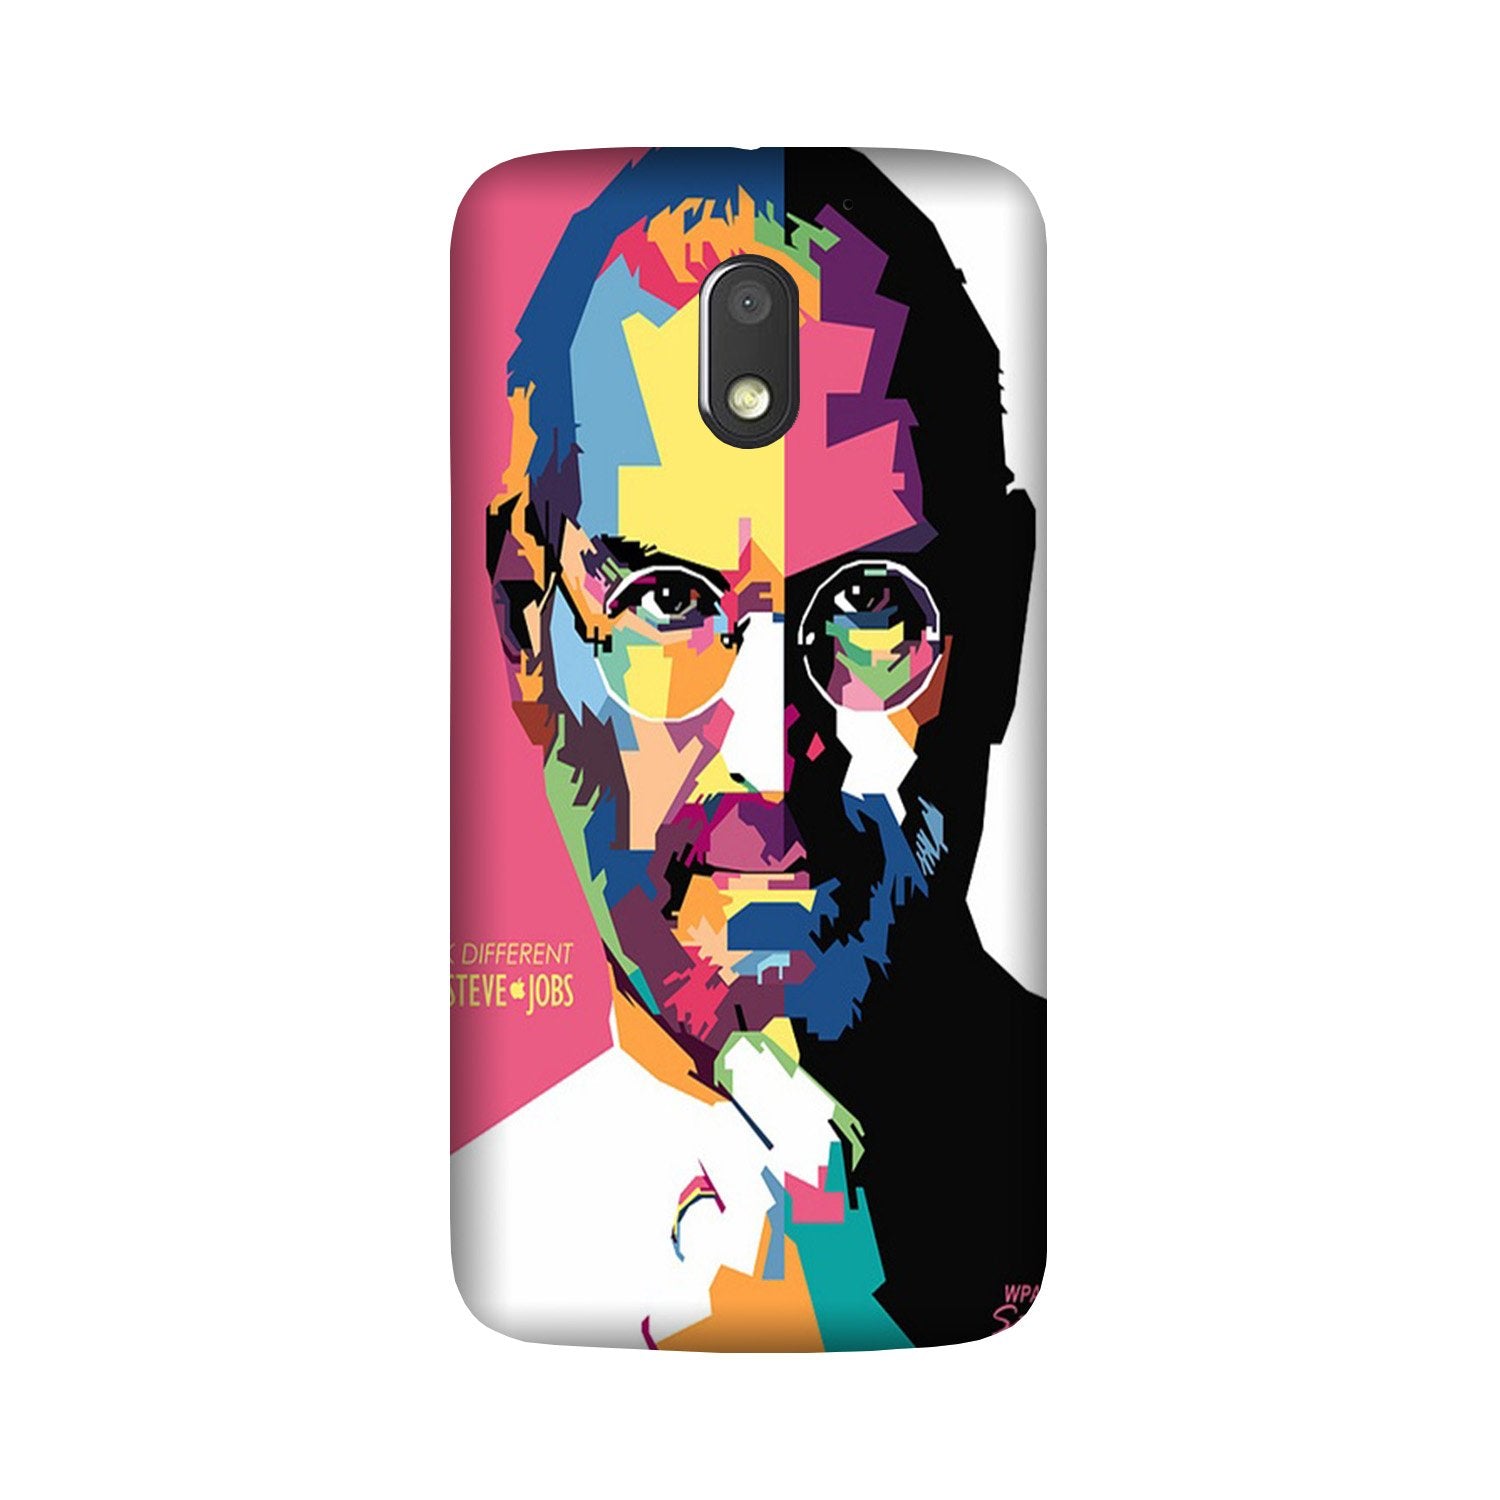 Steve Jobs Case for Moto G4 Play(Design - 132)